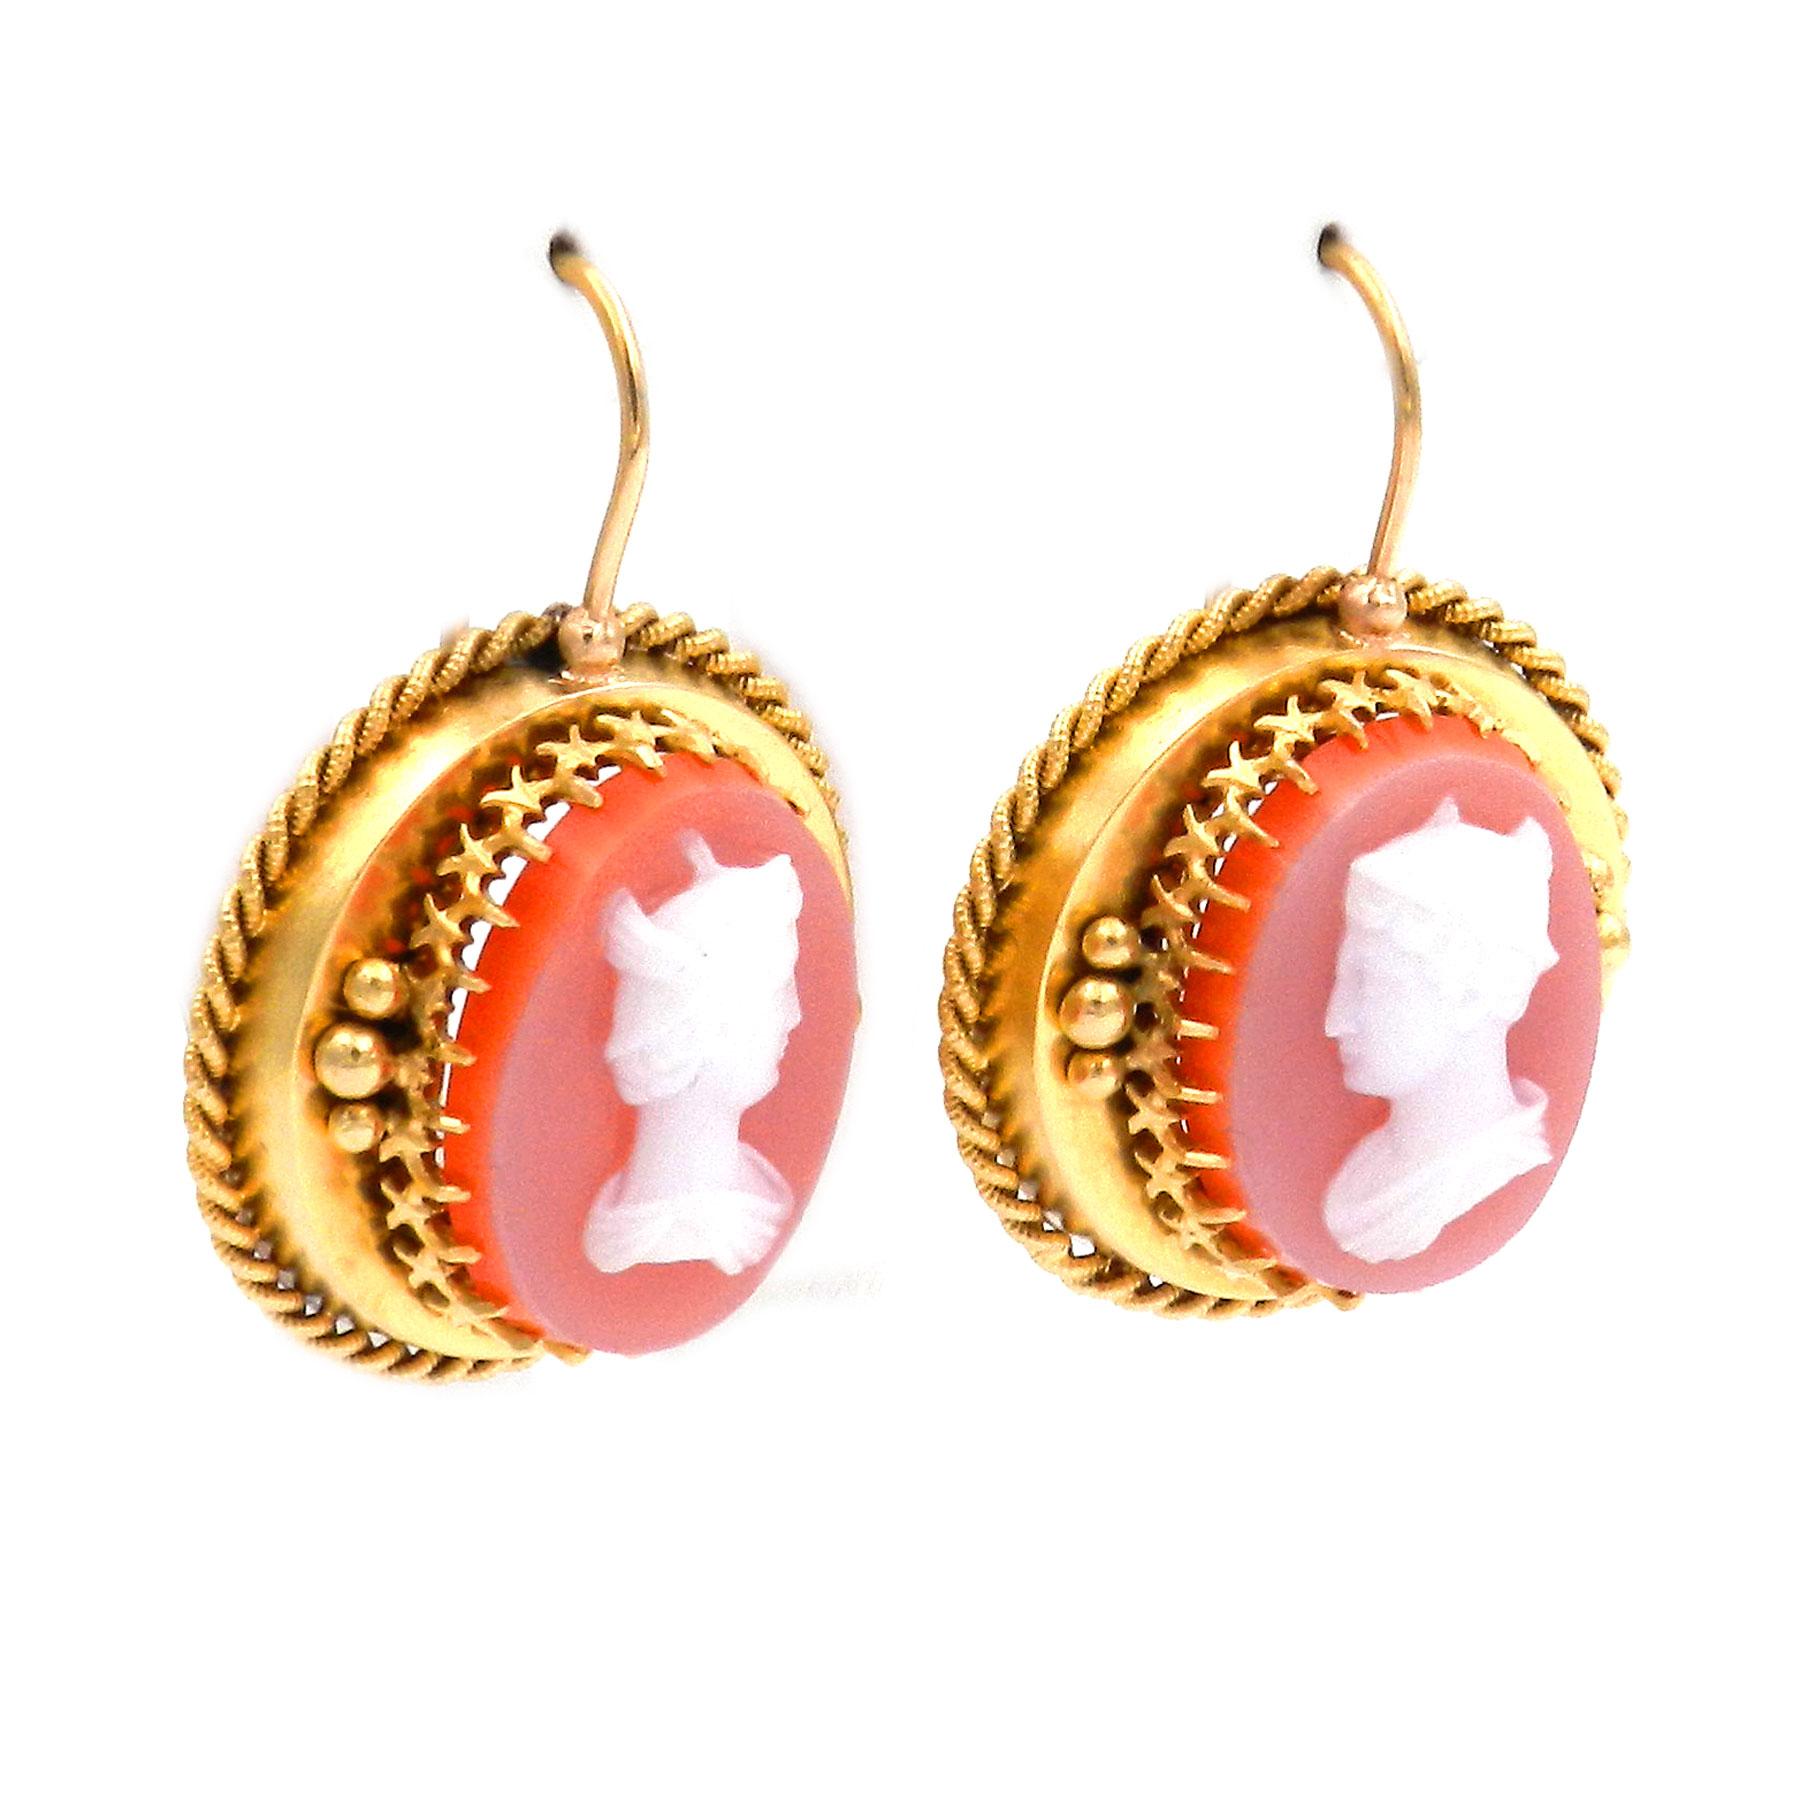 Antike etruskischen Stil Achat Kamee Gold Ohrringe circa 1860

Diese dekorativen Ohrringe mit Achatsteinen im archäologischen Stil wurden um 1860 aus 14-karätigem Gold gefertigt. Eine große ovale Achatkamee, die das fein geschliffene Profil von